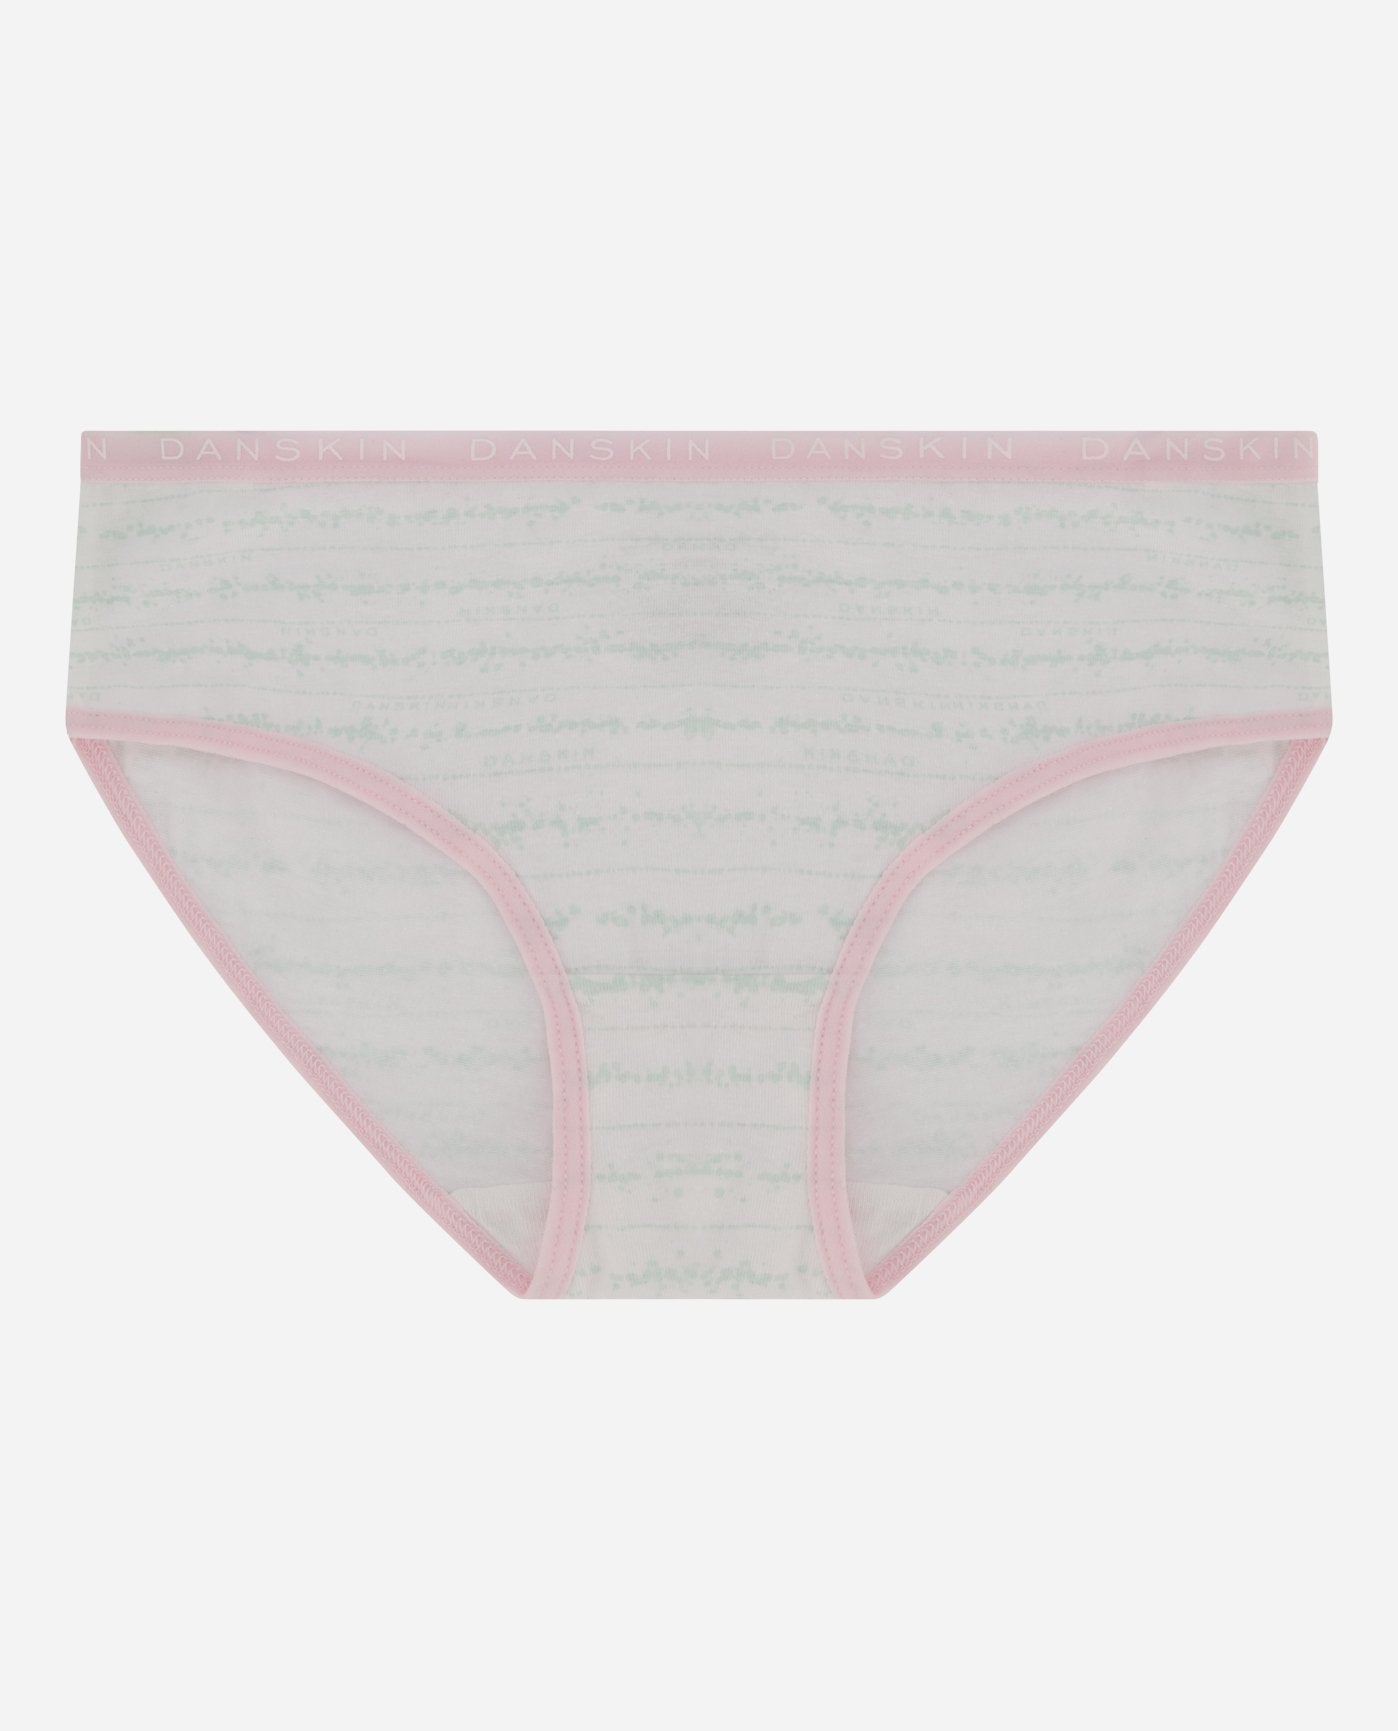 Bulk Girls' Panties - Assorted Prints & Colors